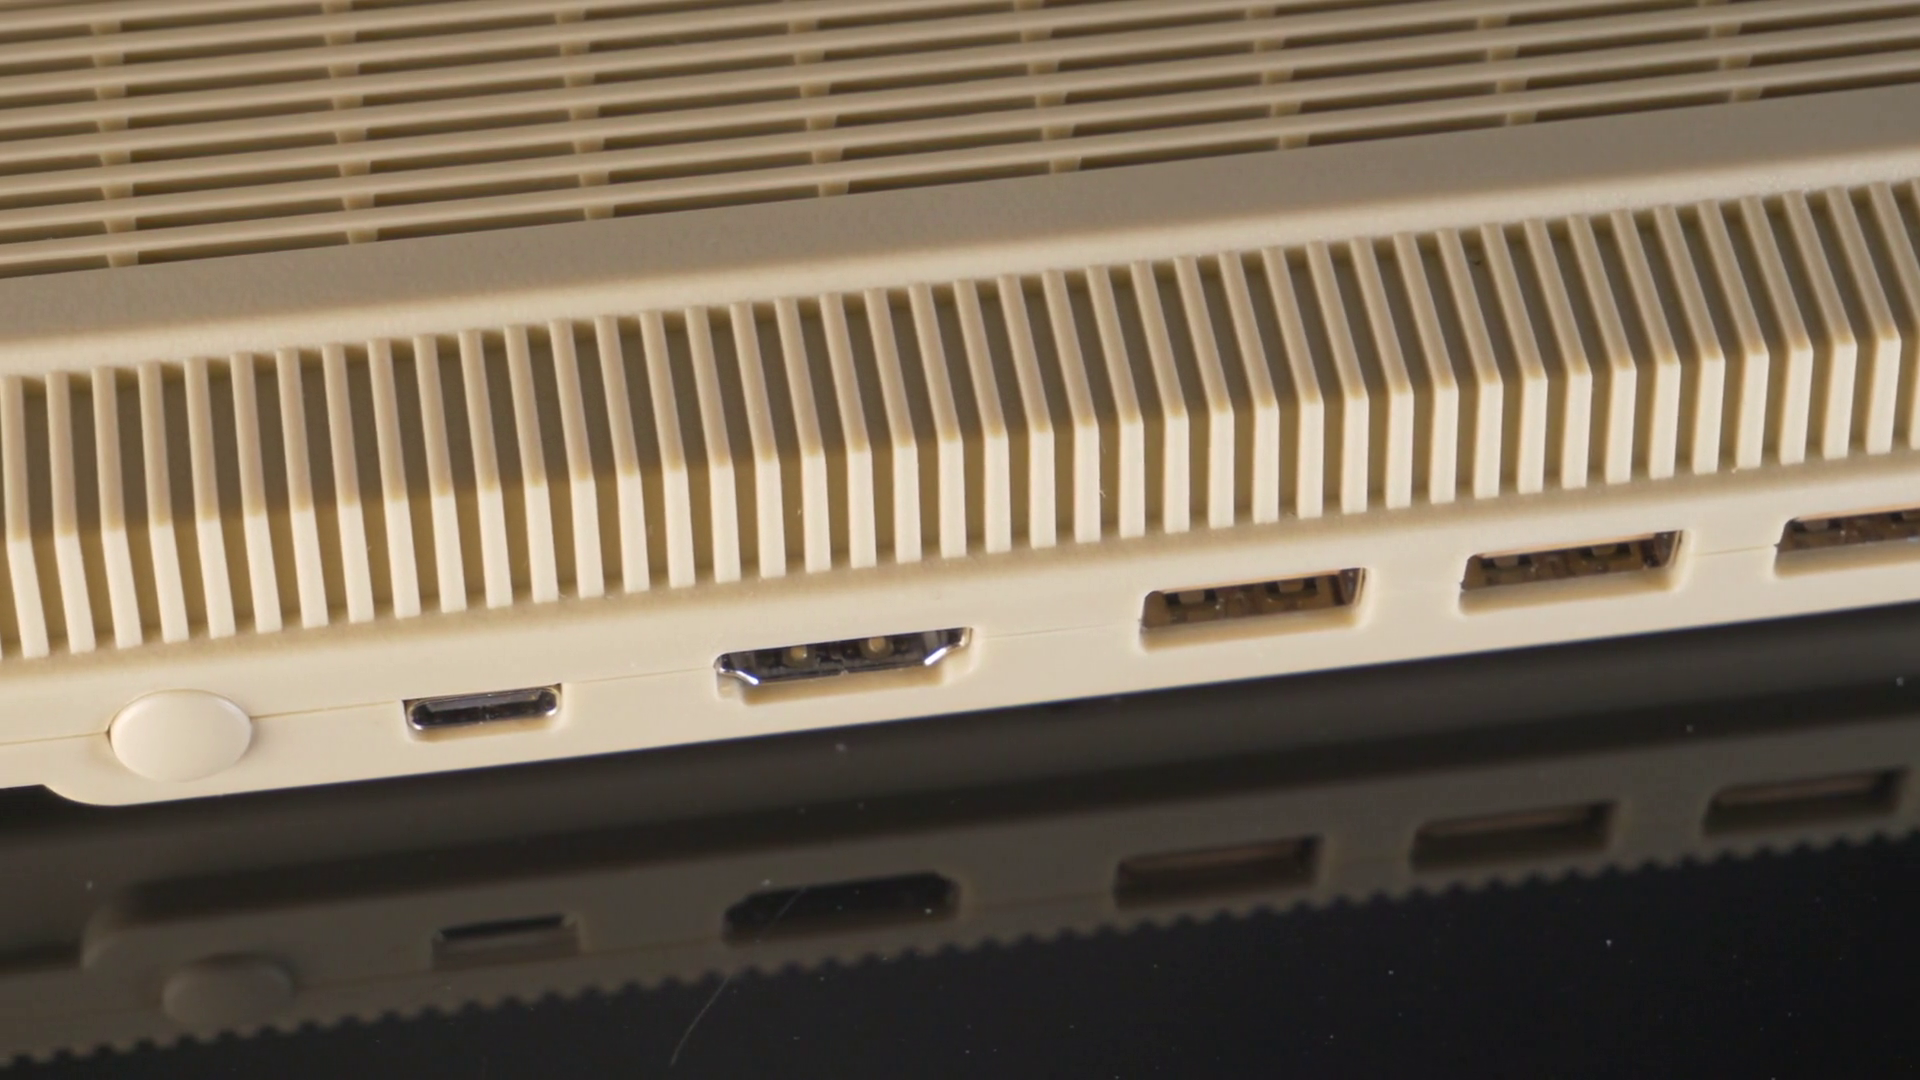 The A500 Mini shown here is a small version of the original Commodore Amiga 500.